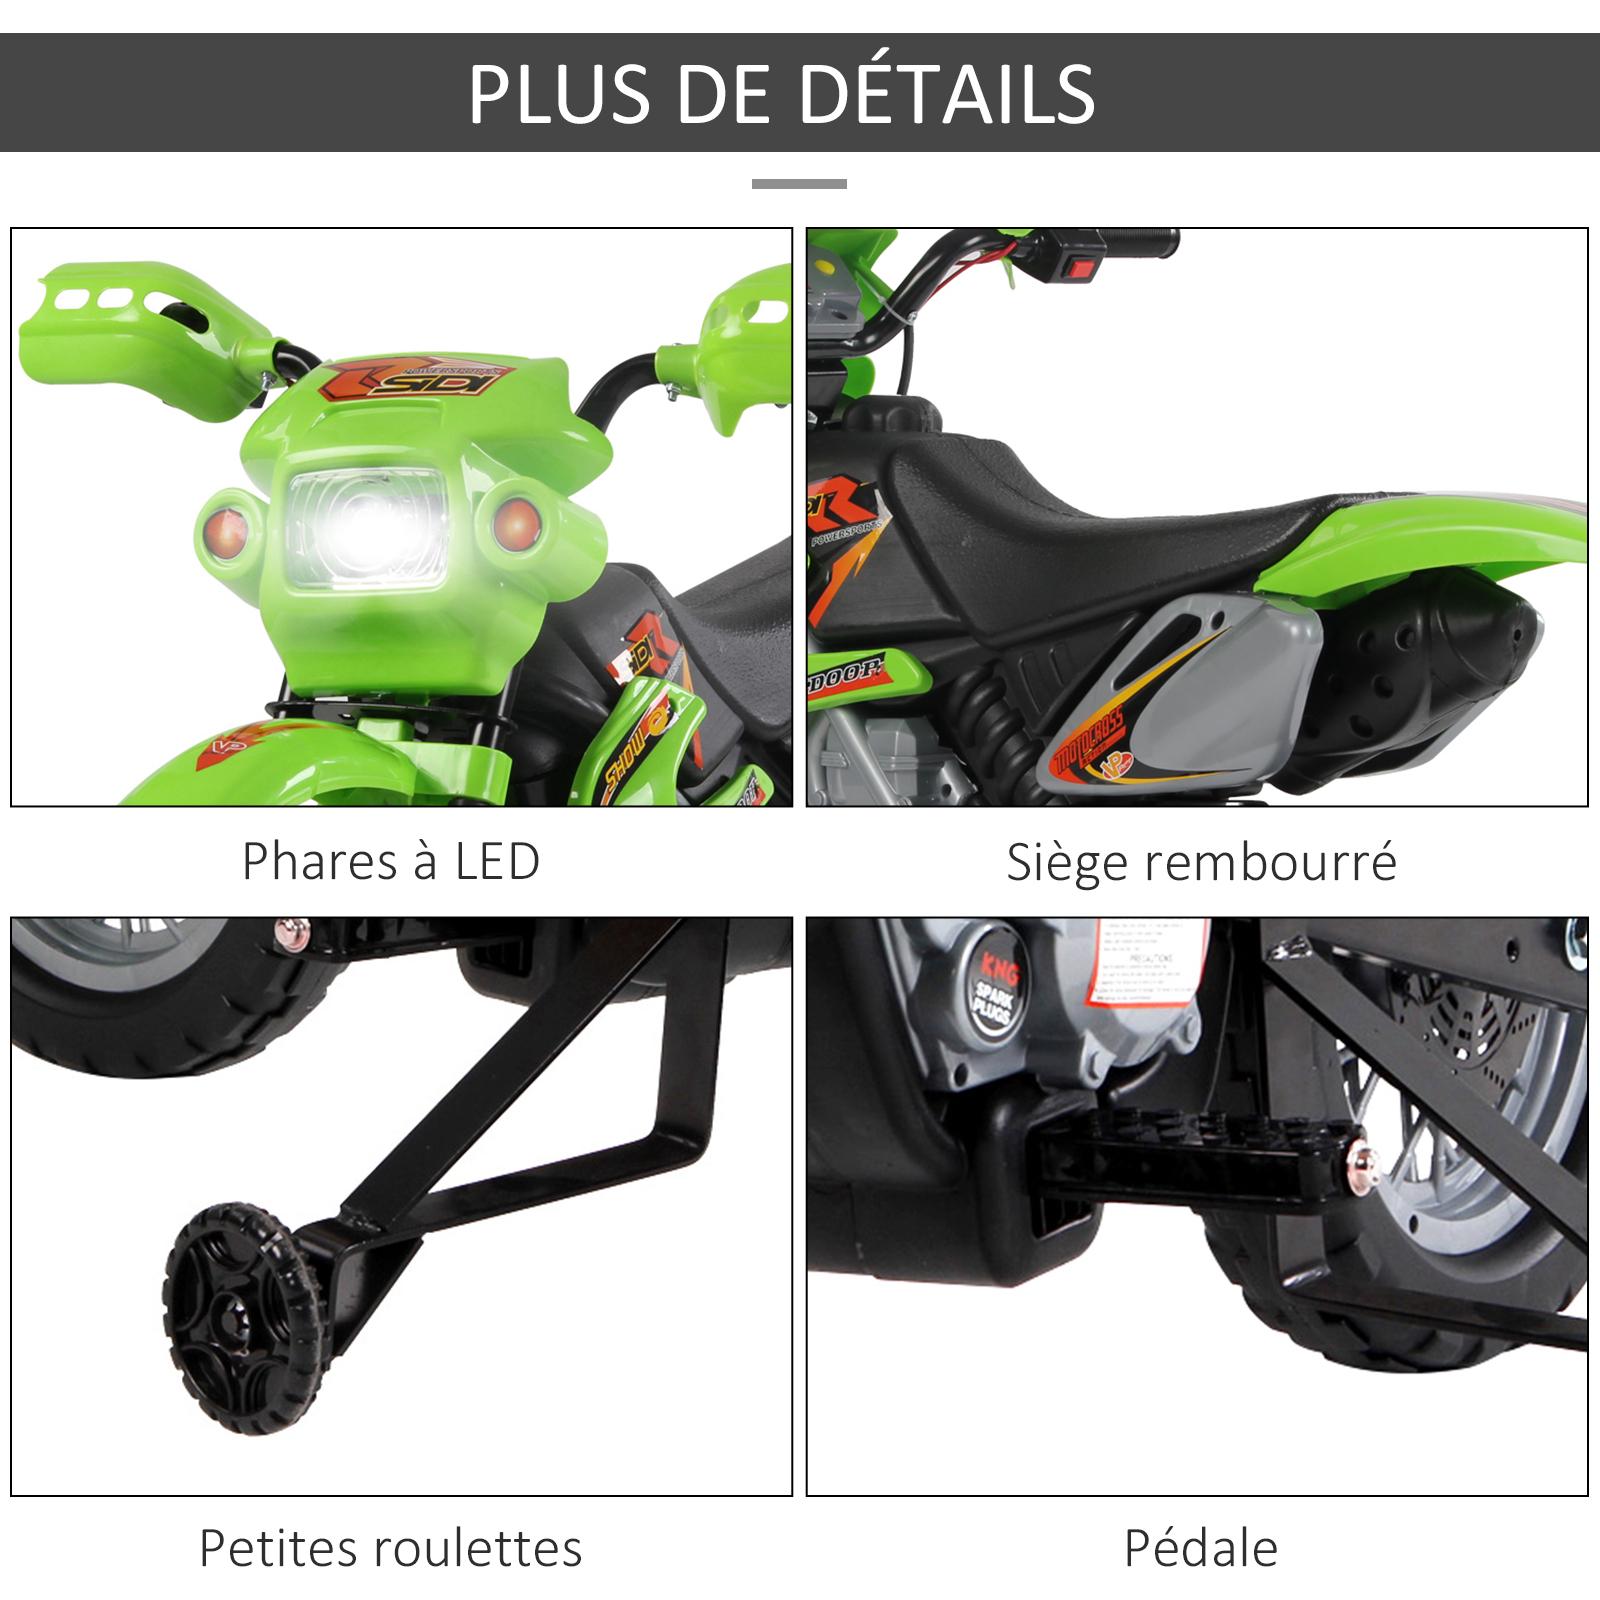 Moto Cross électrique enfant 3 à 6 ans 6 V phares klaxon musiques 102 x 53 x 66 cm vert et noir